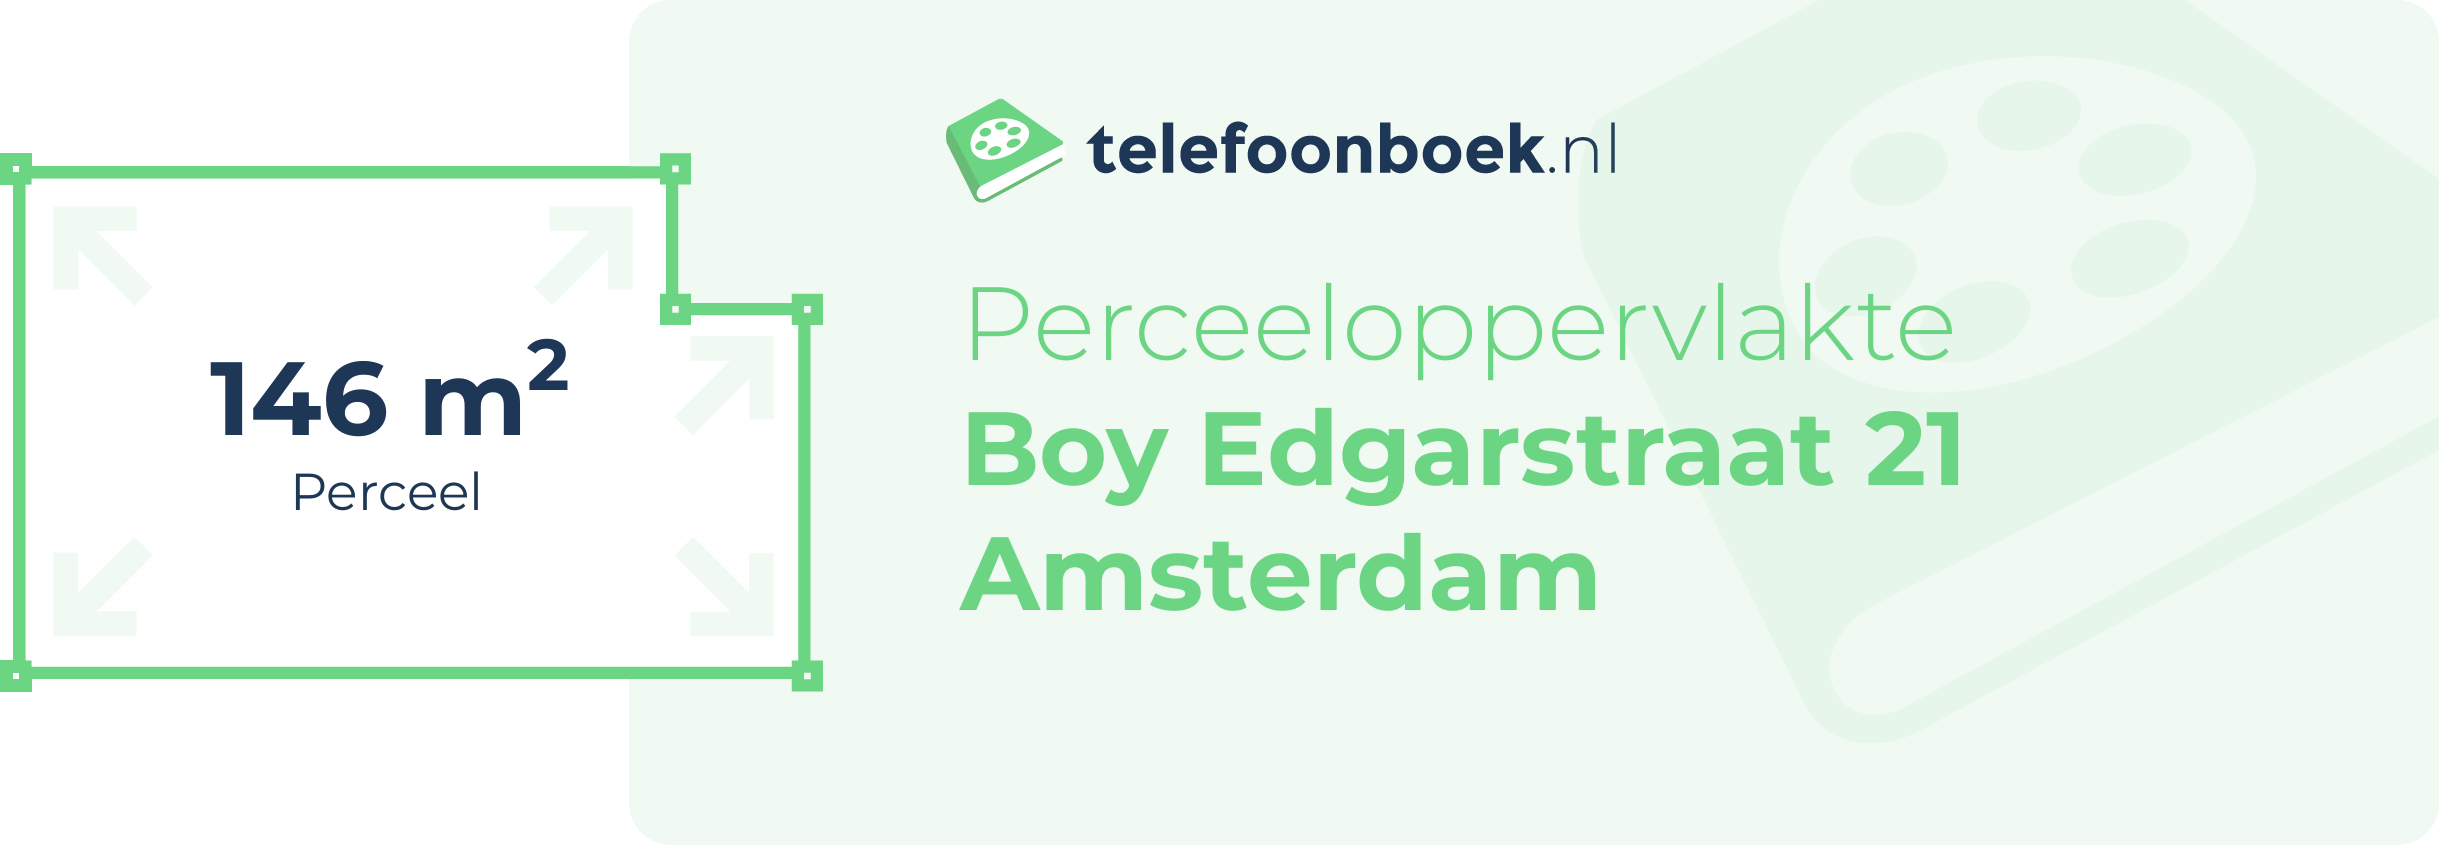 Perceeloppervlakte Boy Edgarstraat 21 Amsterdam